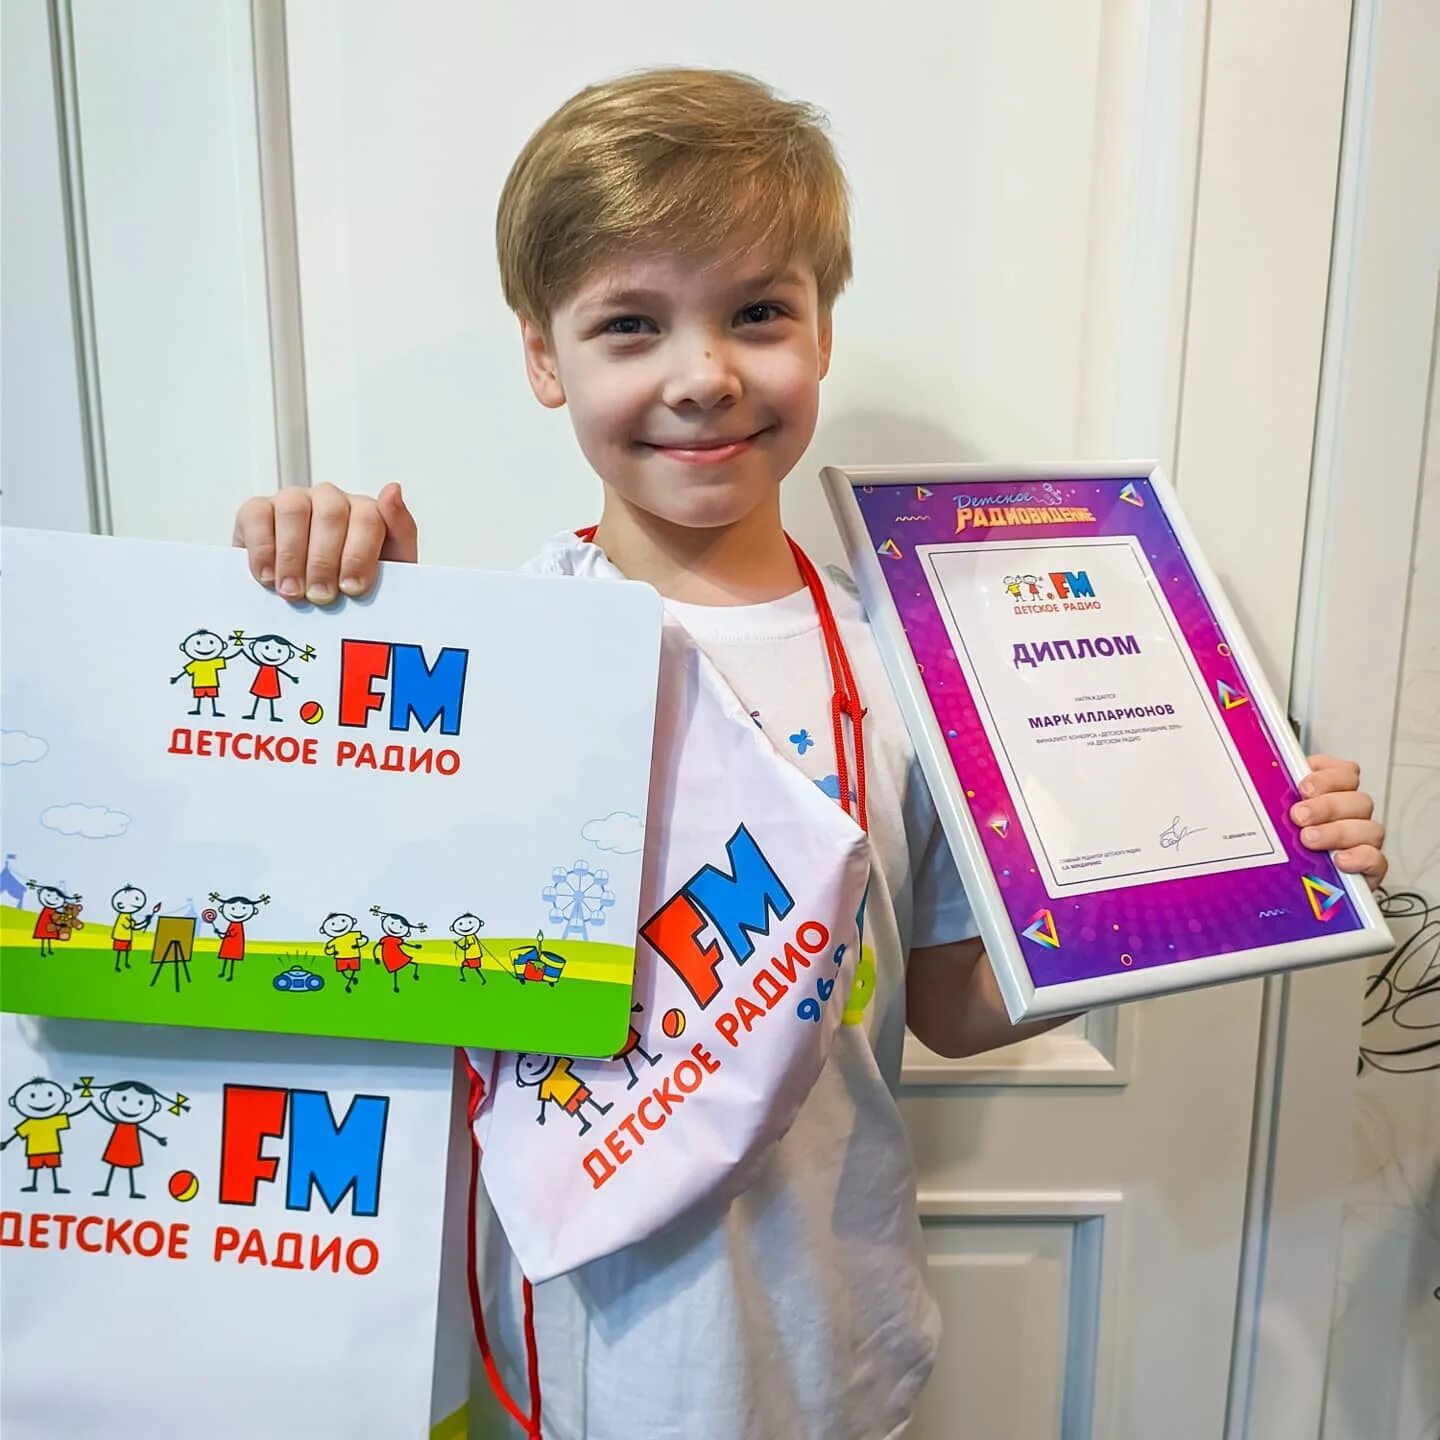 Детское радио. Детское радио для детей. Детское радио картинки. Fm детское радио. Radio детское